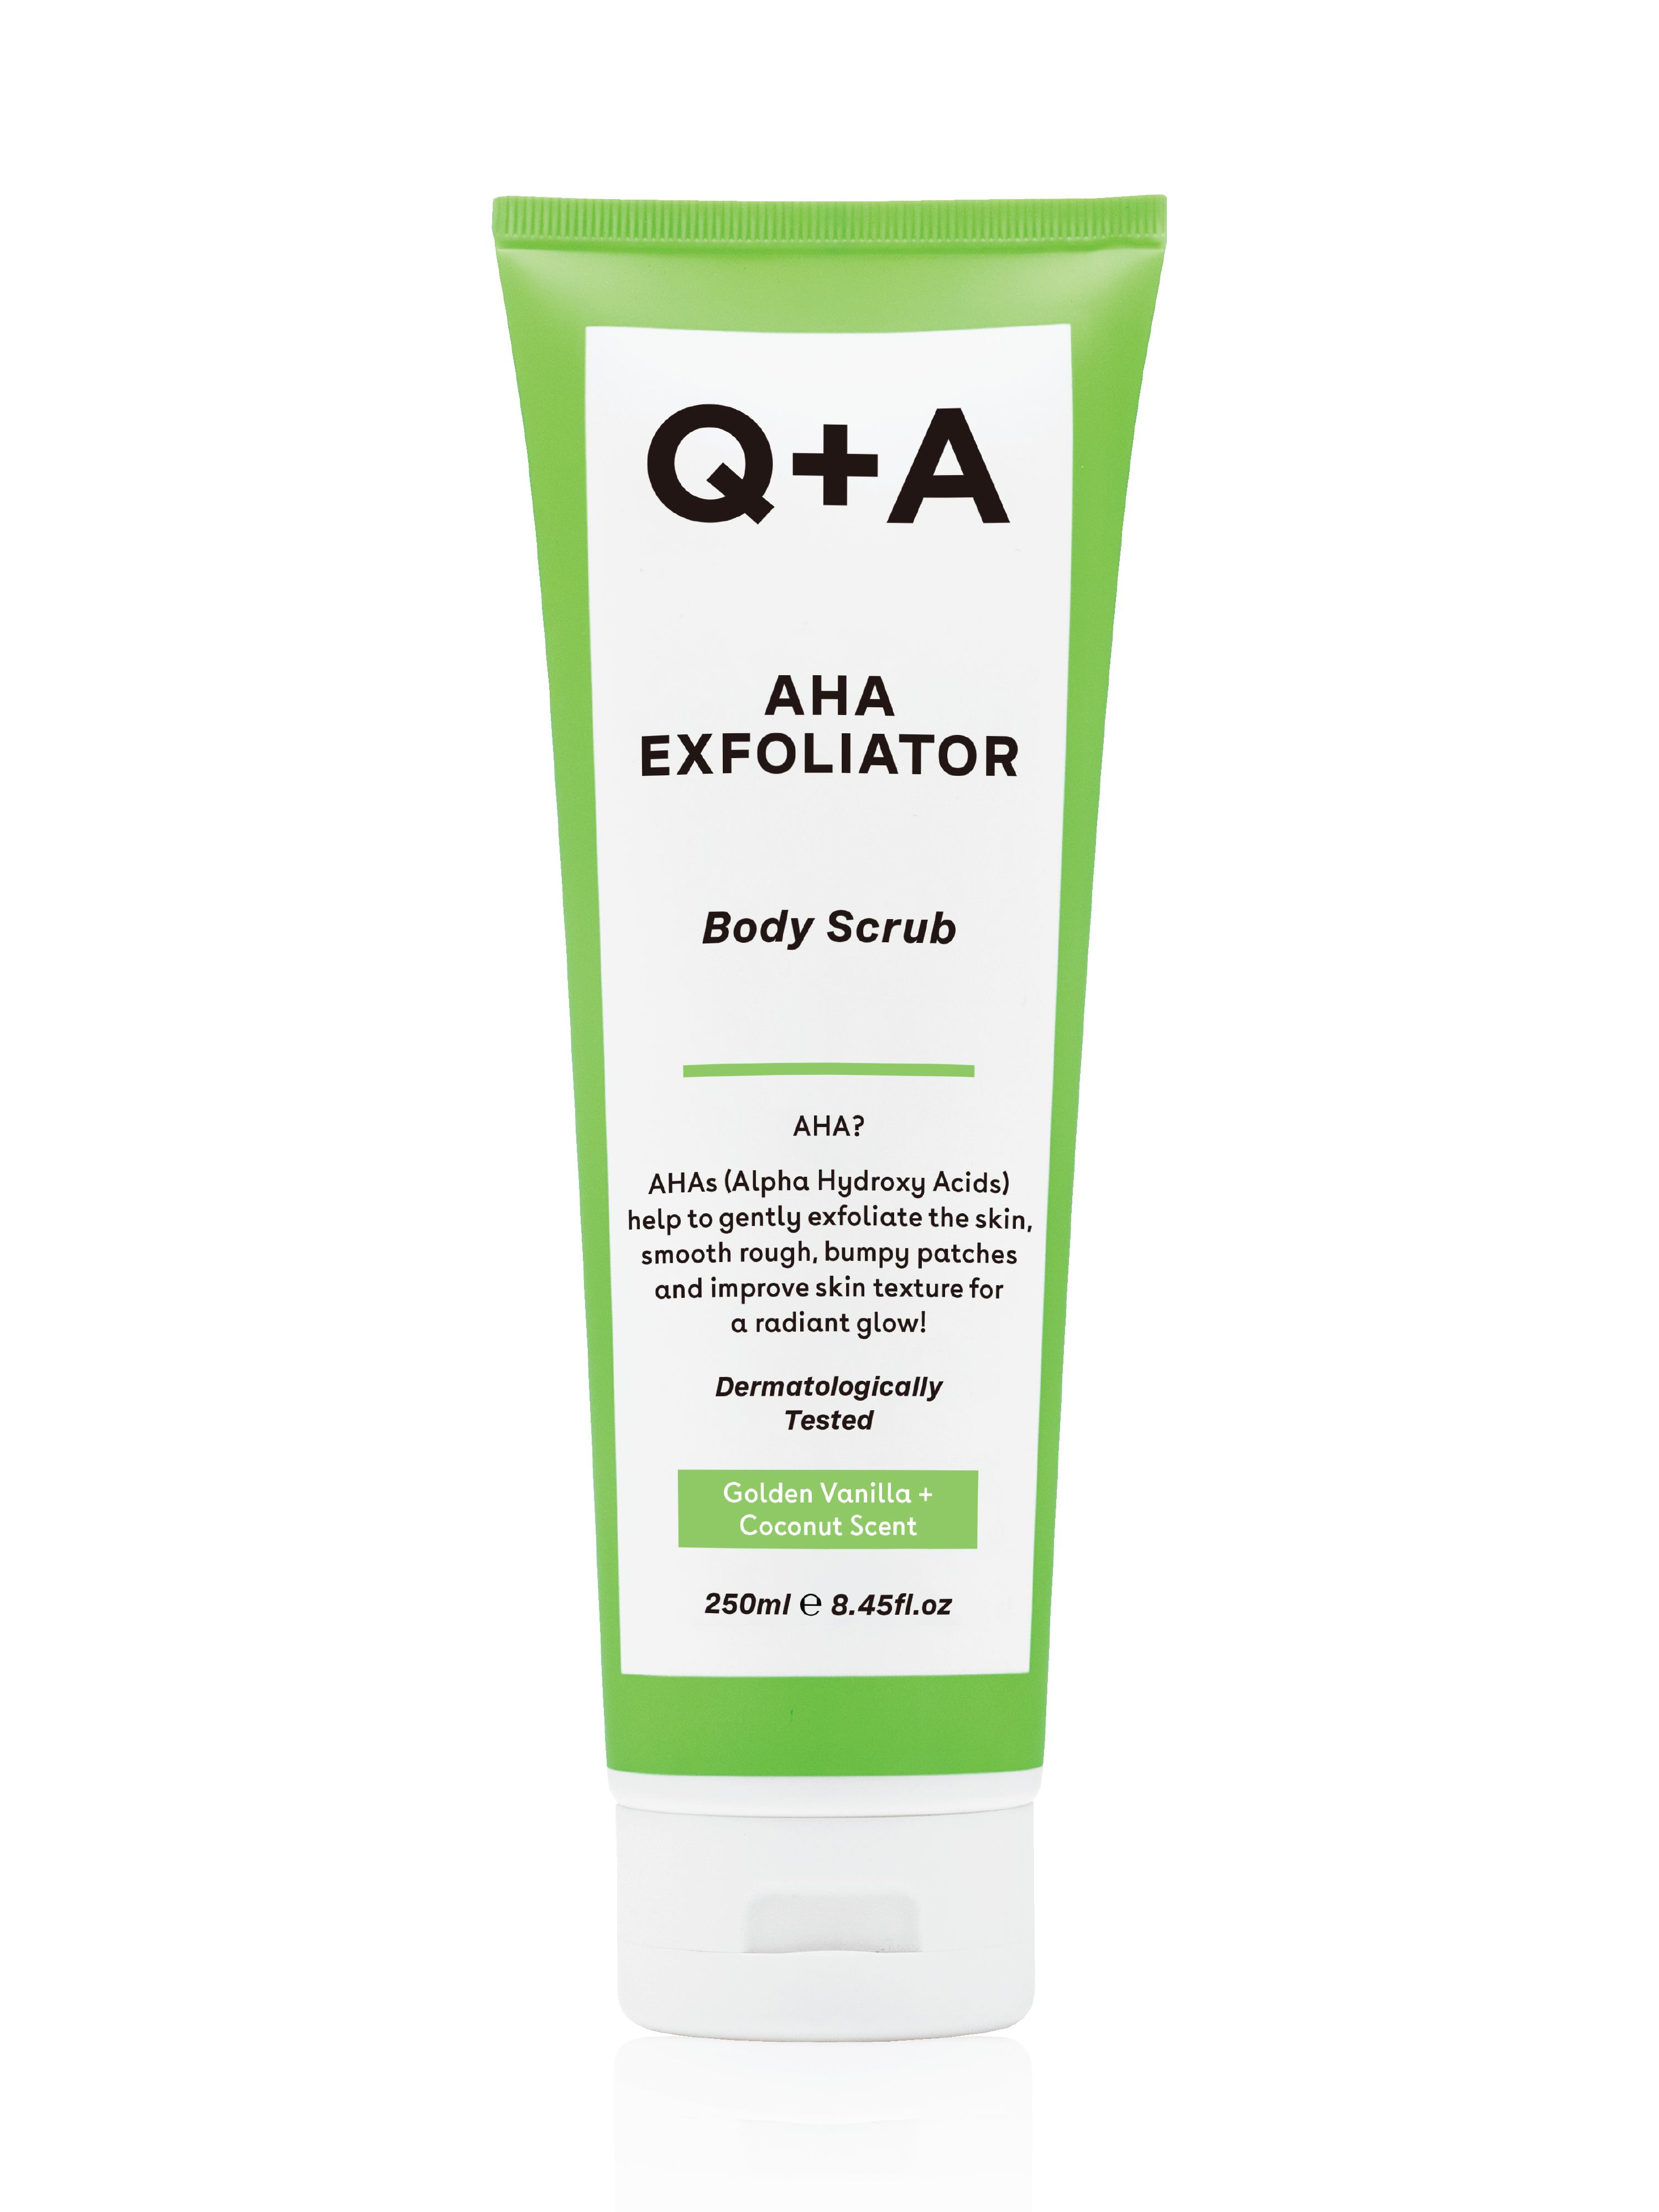 Q+A AHA Exfoliator Body Scrub, 250 ml